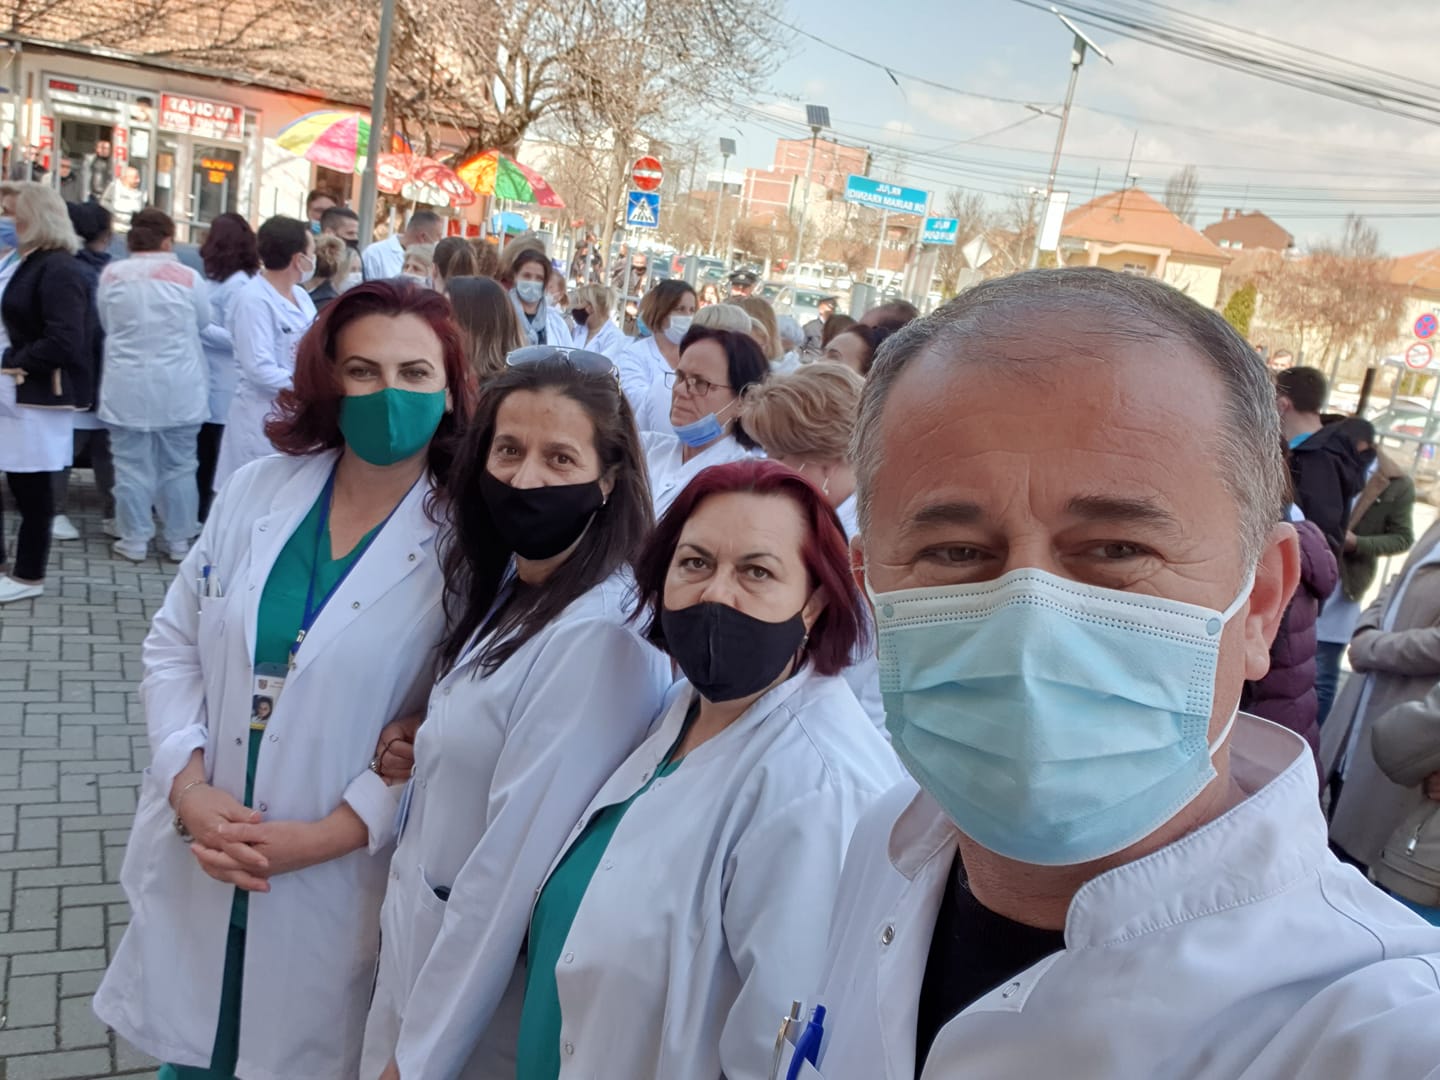  Protestojnë mjekët në Podujevë për doktorin që nuk e trajtoi pacientin, kërkojnë lirimin e tij